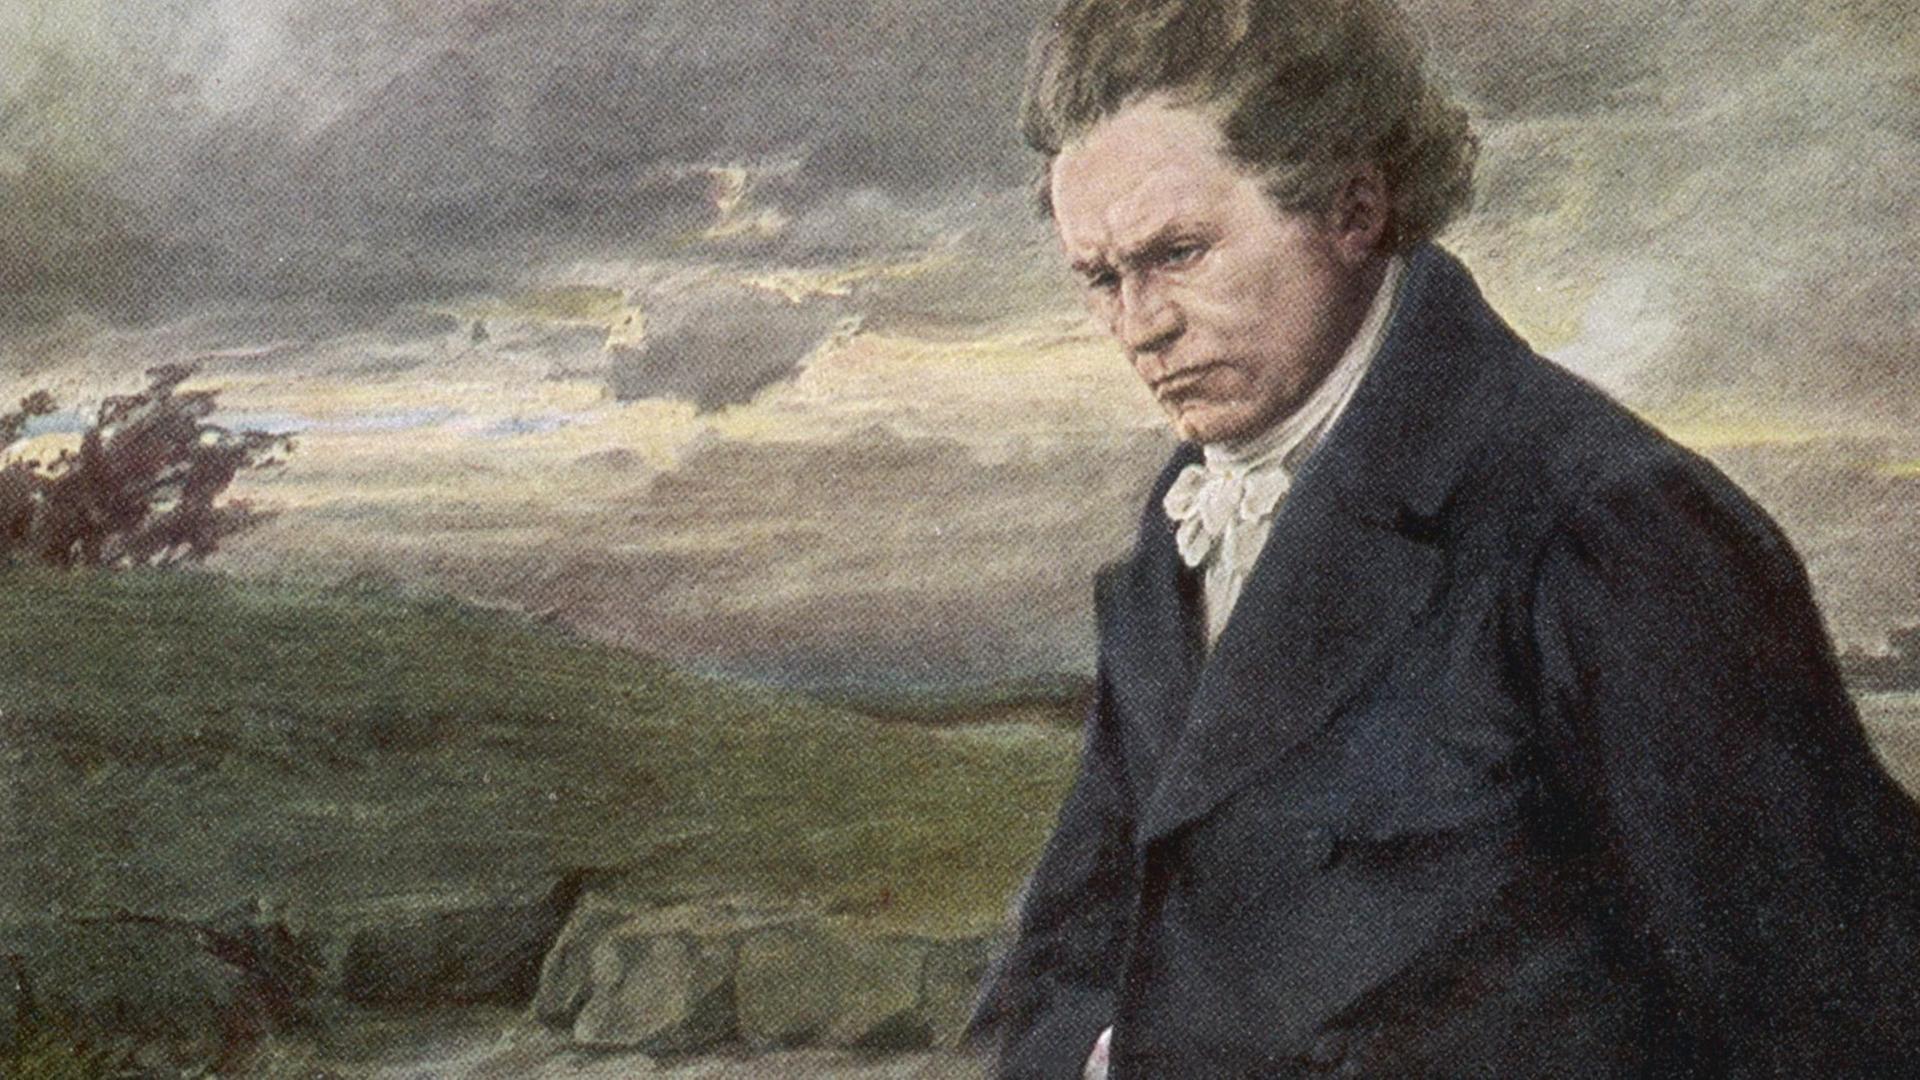 Gemälde von Beethoven bei einem Spaziergang bei windigem Wetter.